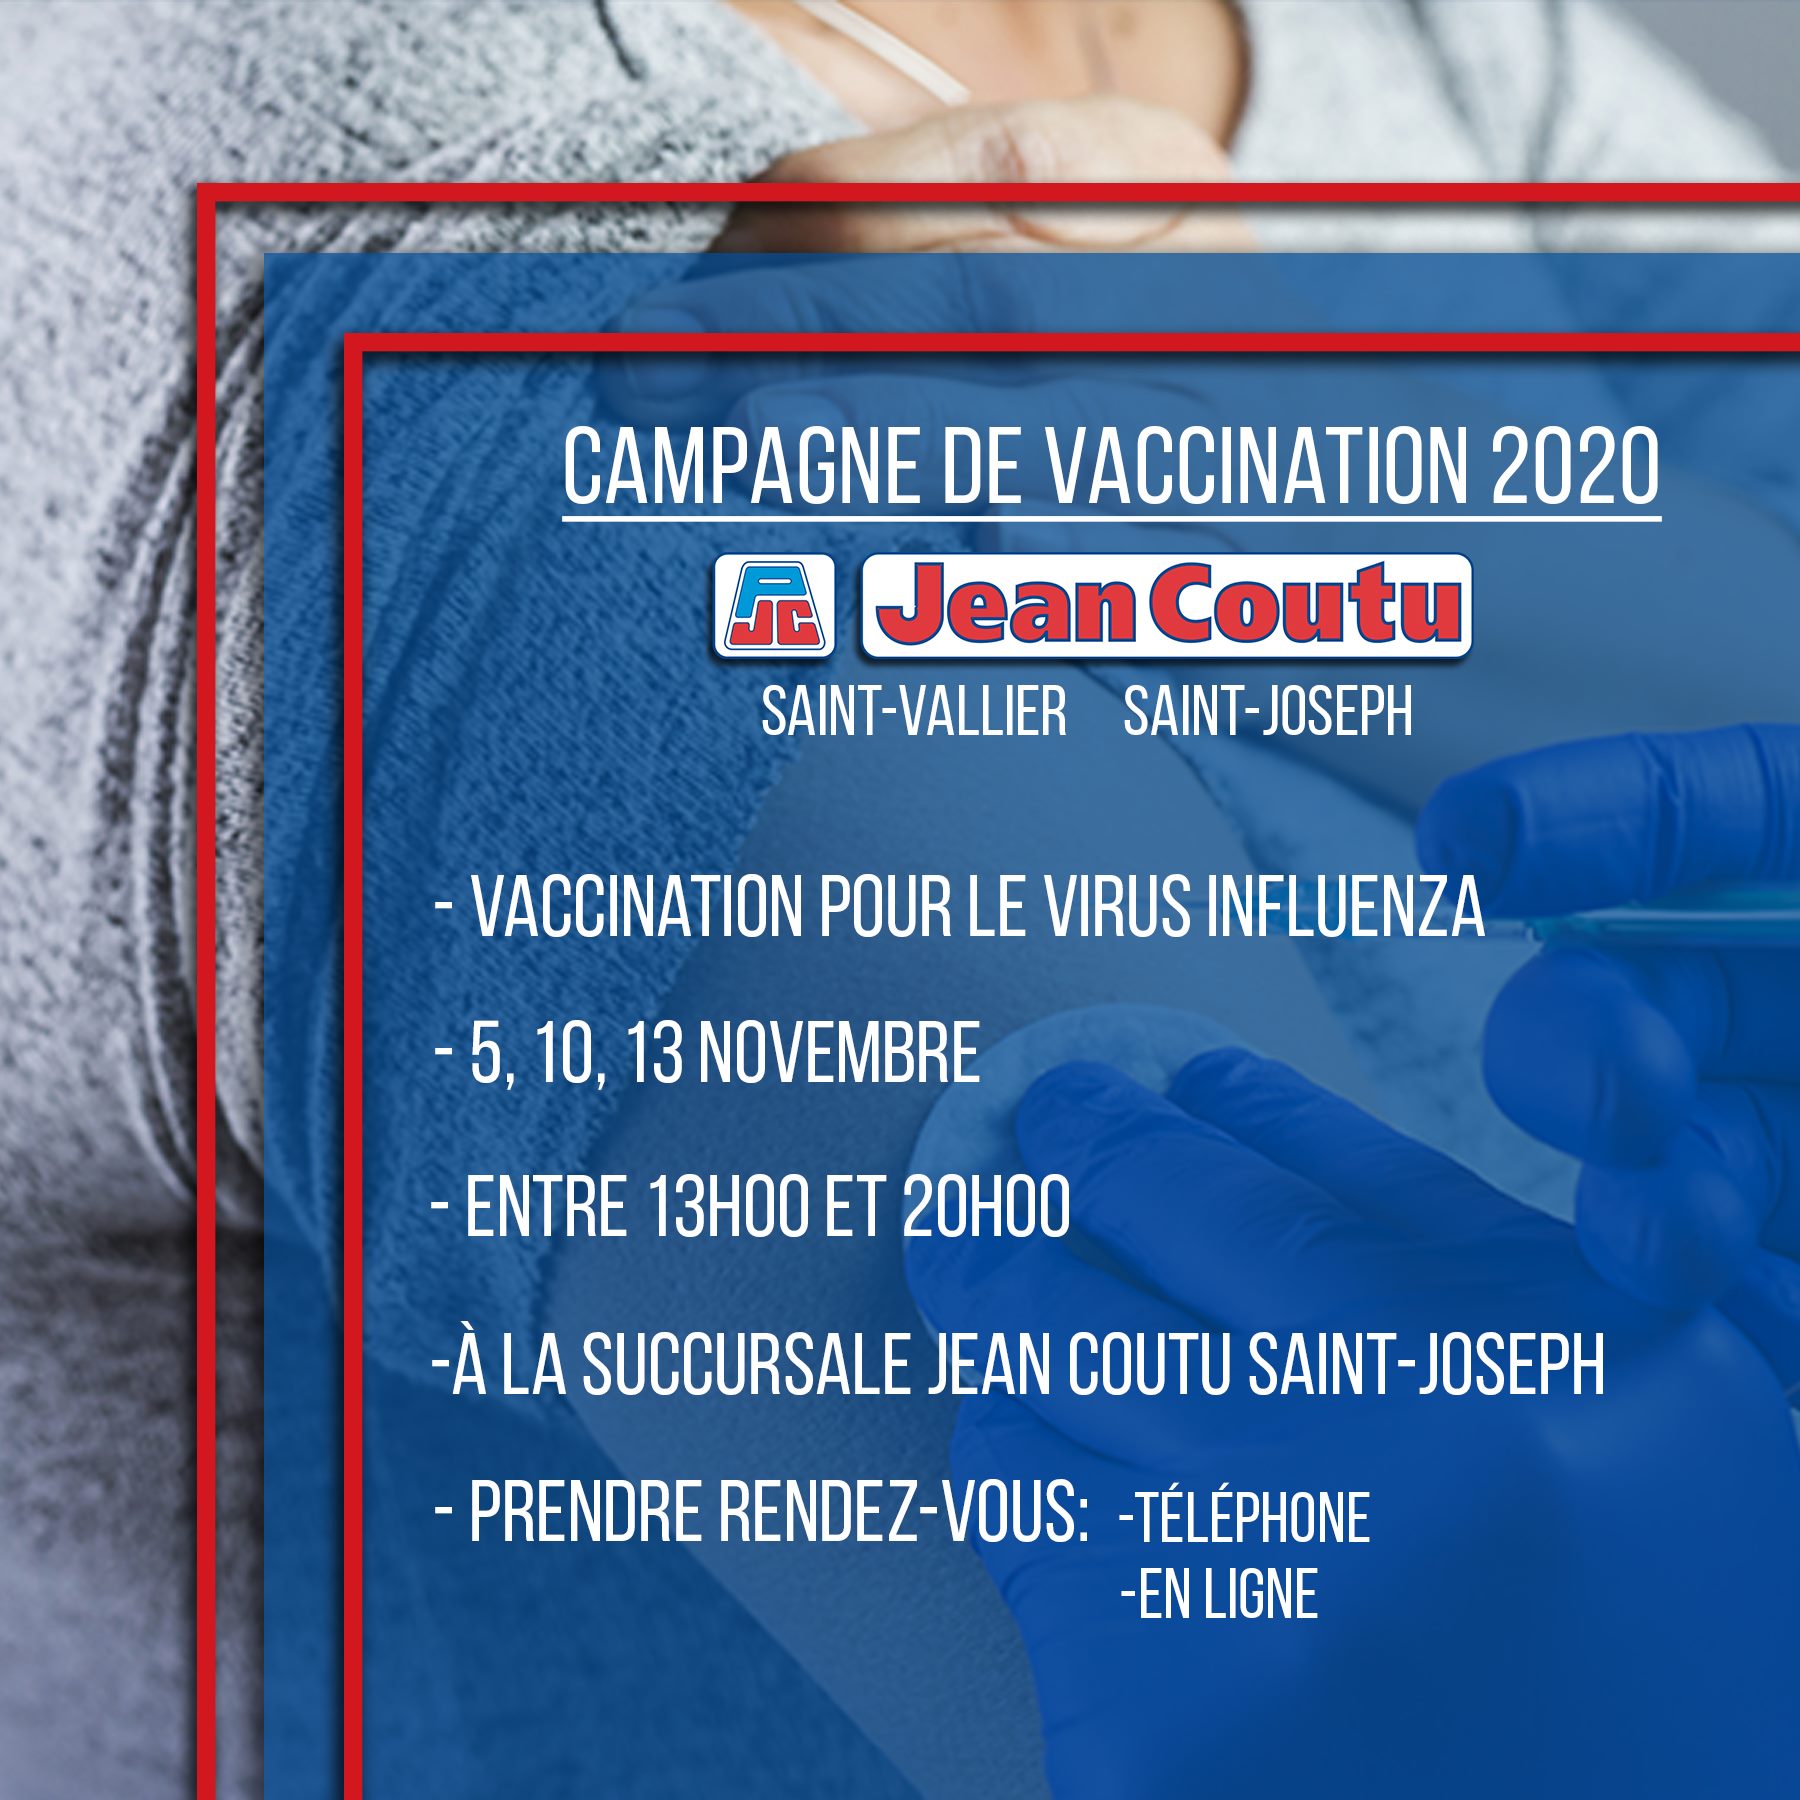 Campagne de vaccination influenza | Jean Coutu